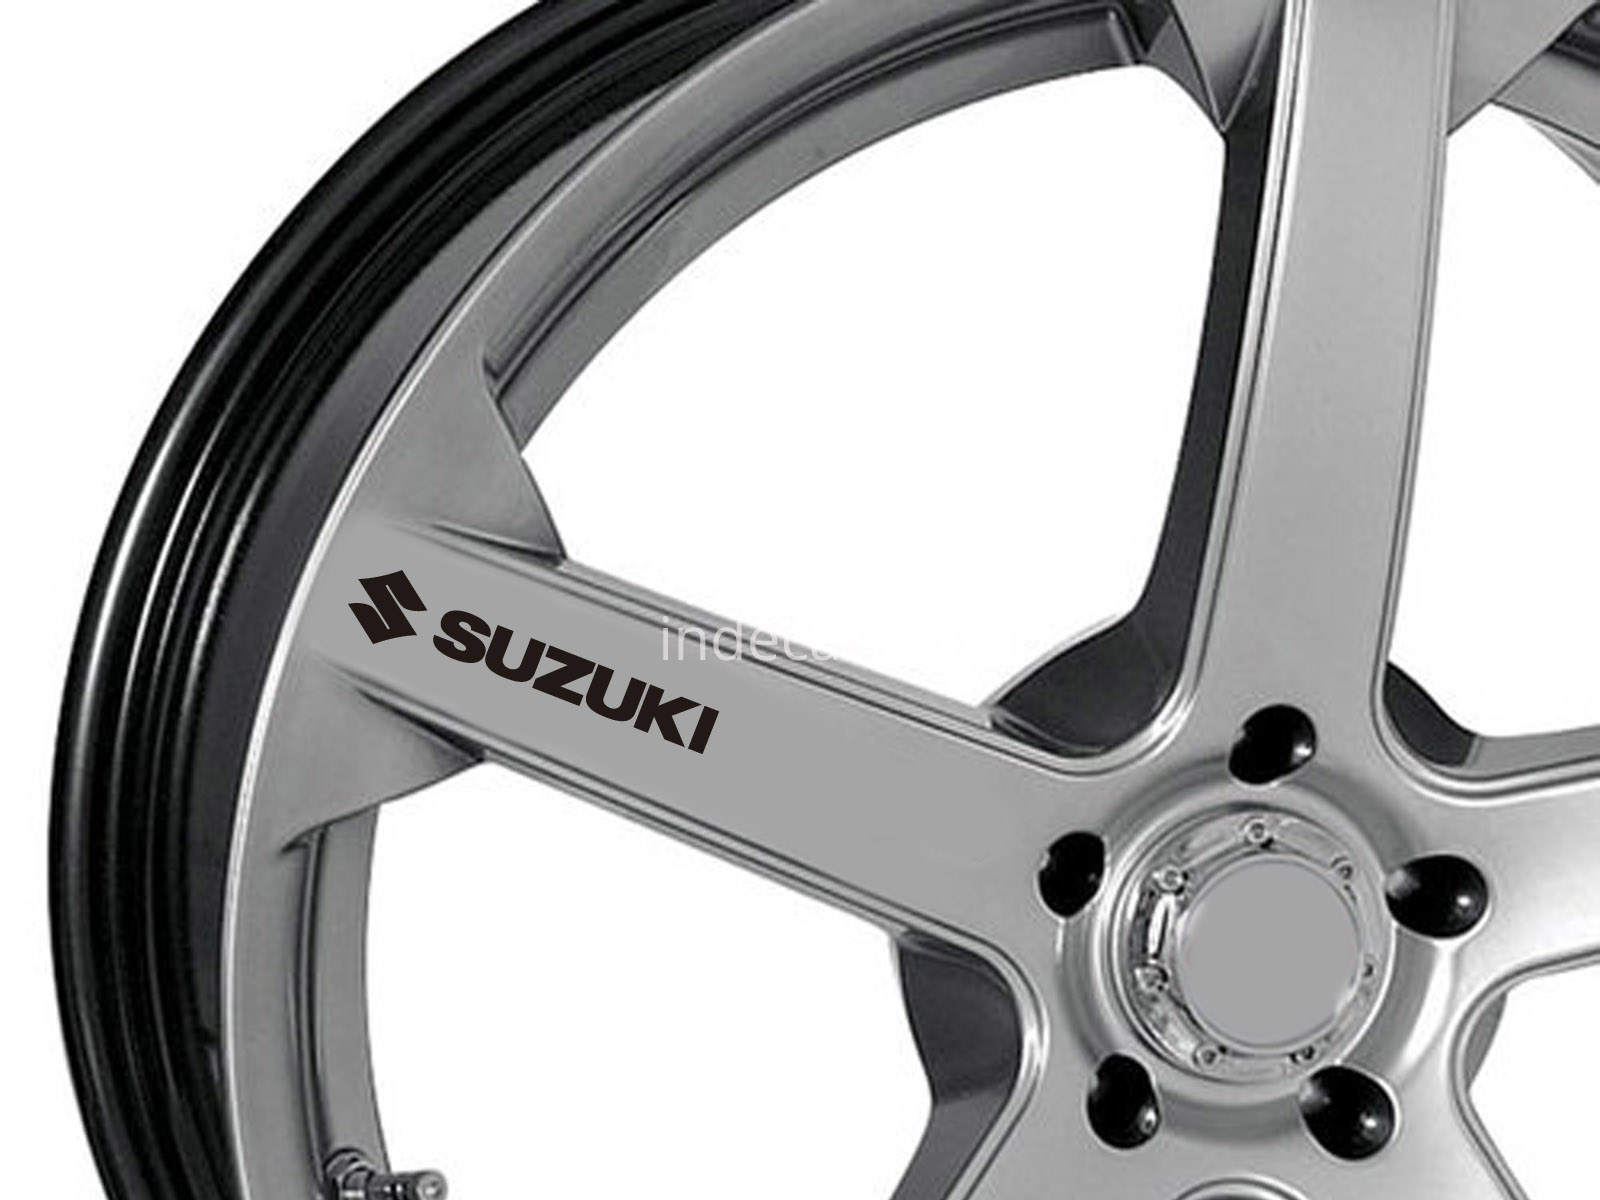 6 x Suzuki Stickers for Wheels - Black